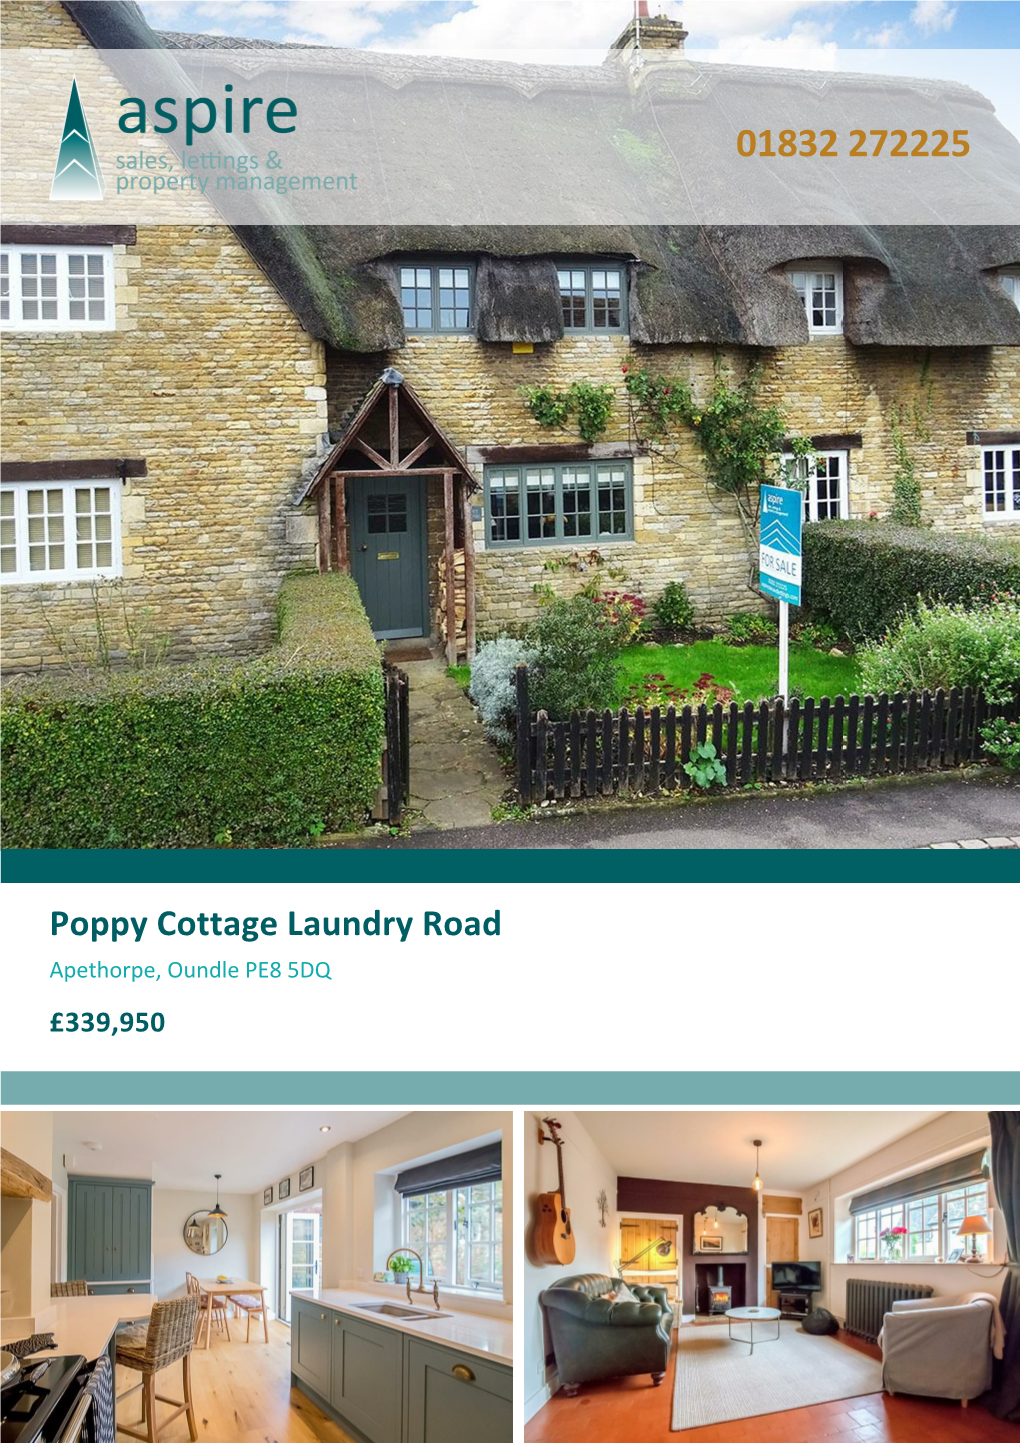 Poppy Cottage Laundry Road Apethorpe, Oundle PE8 5DQ £339,950 Poppy Cottage Laundry Road Apethorpe, Oundle, PE8 5DQ £339,950